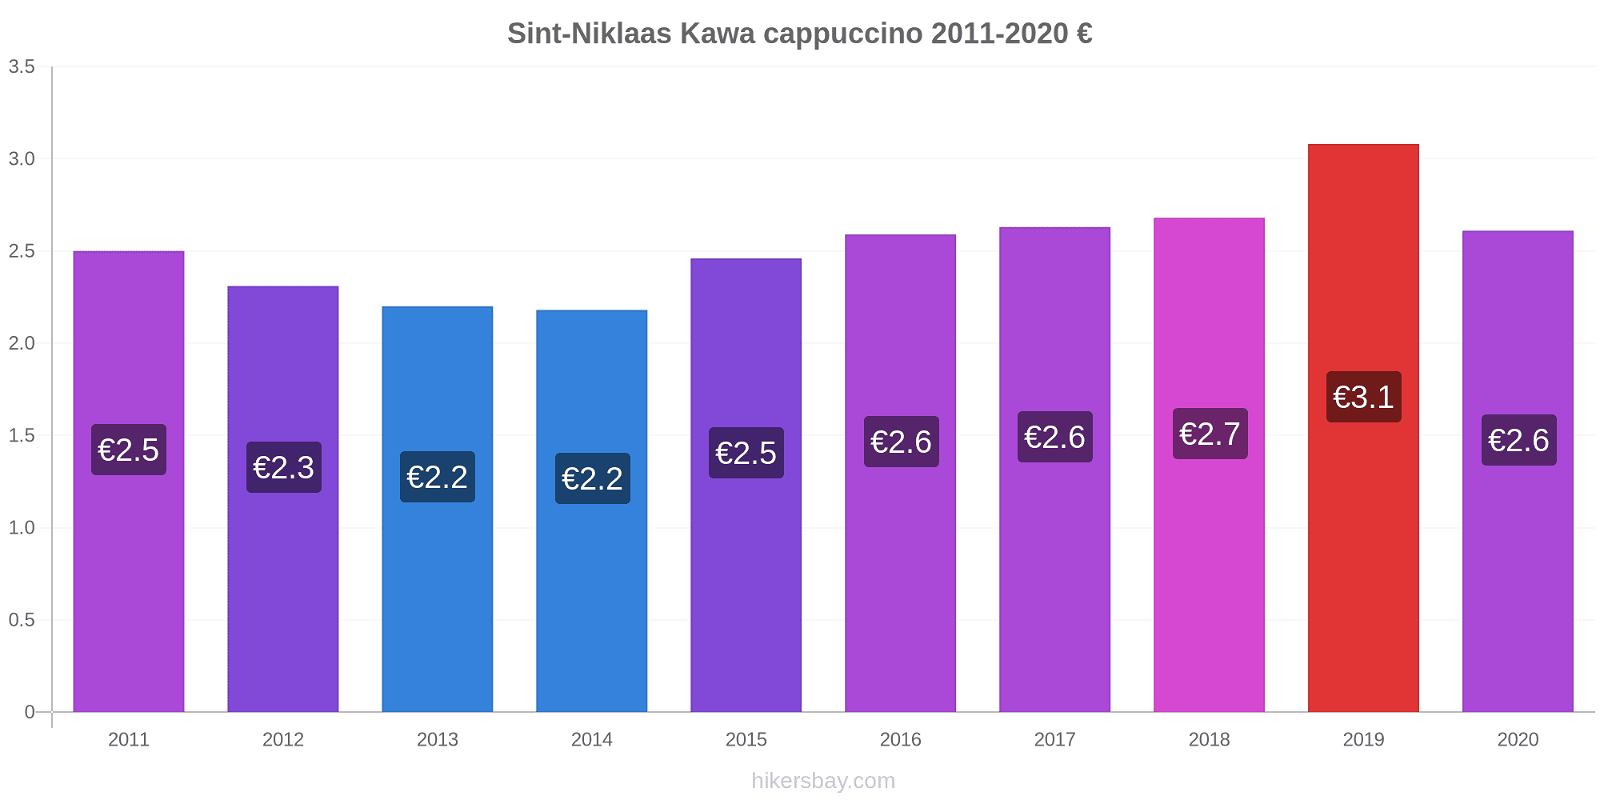 Sint-Niklaas zmiany cen Kawa cappuccino hikersbay.com